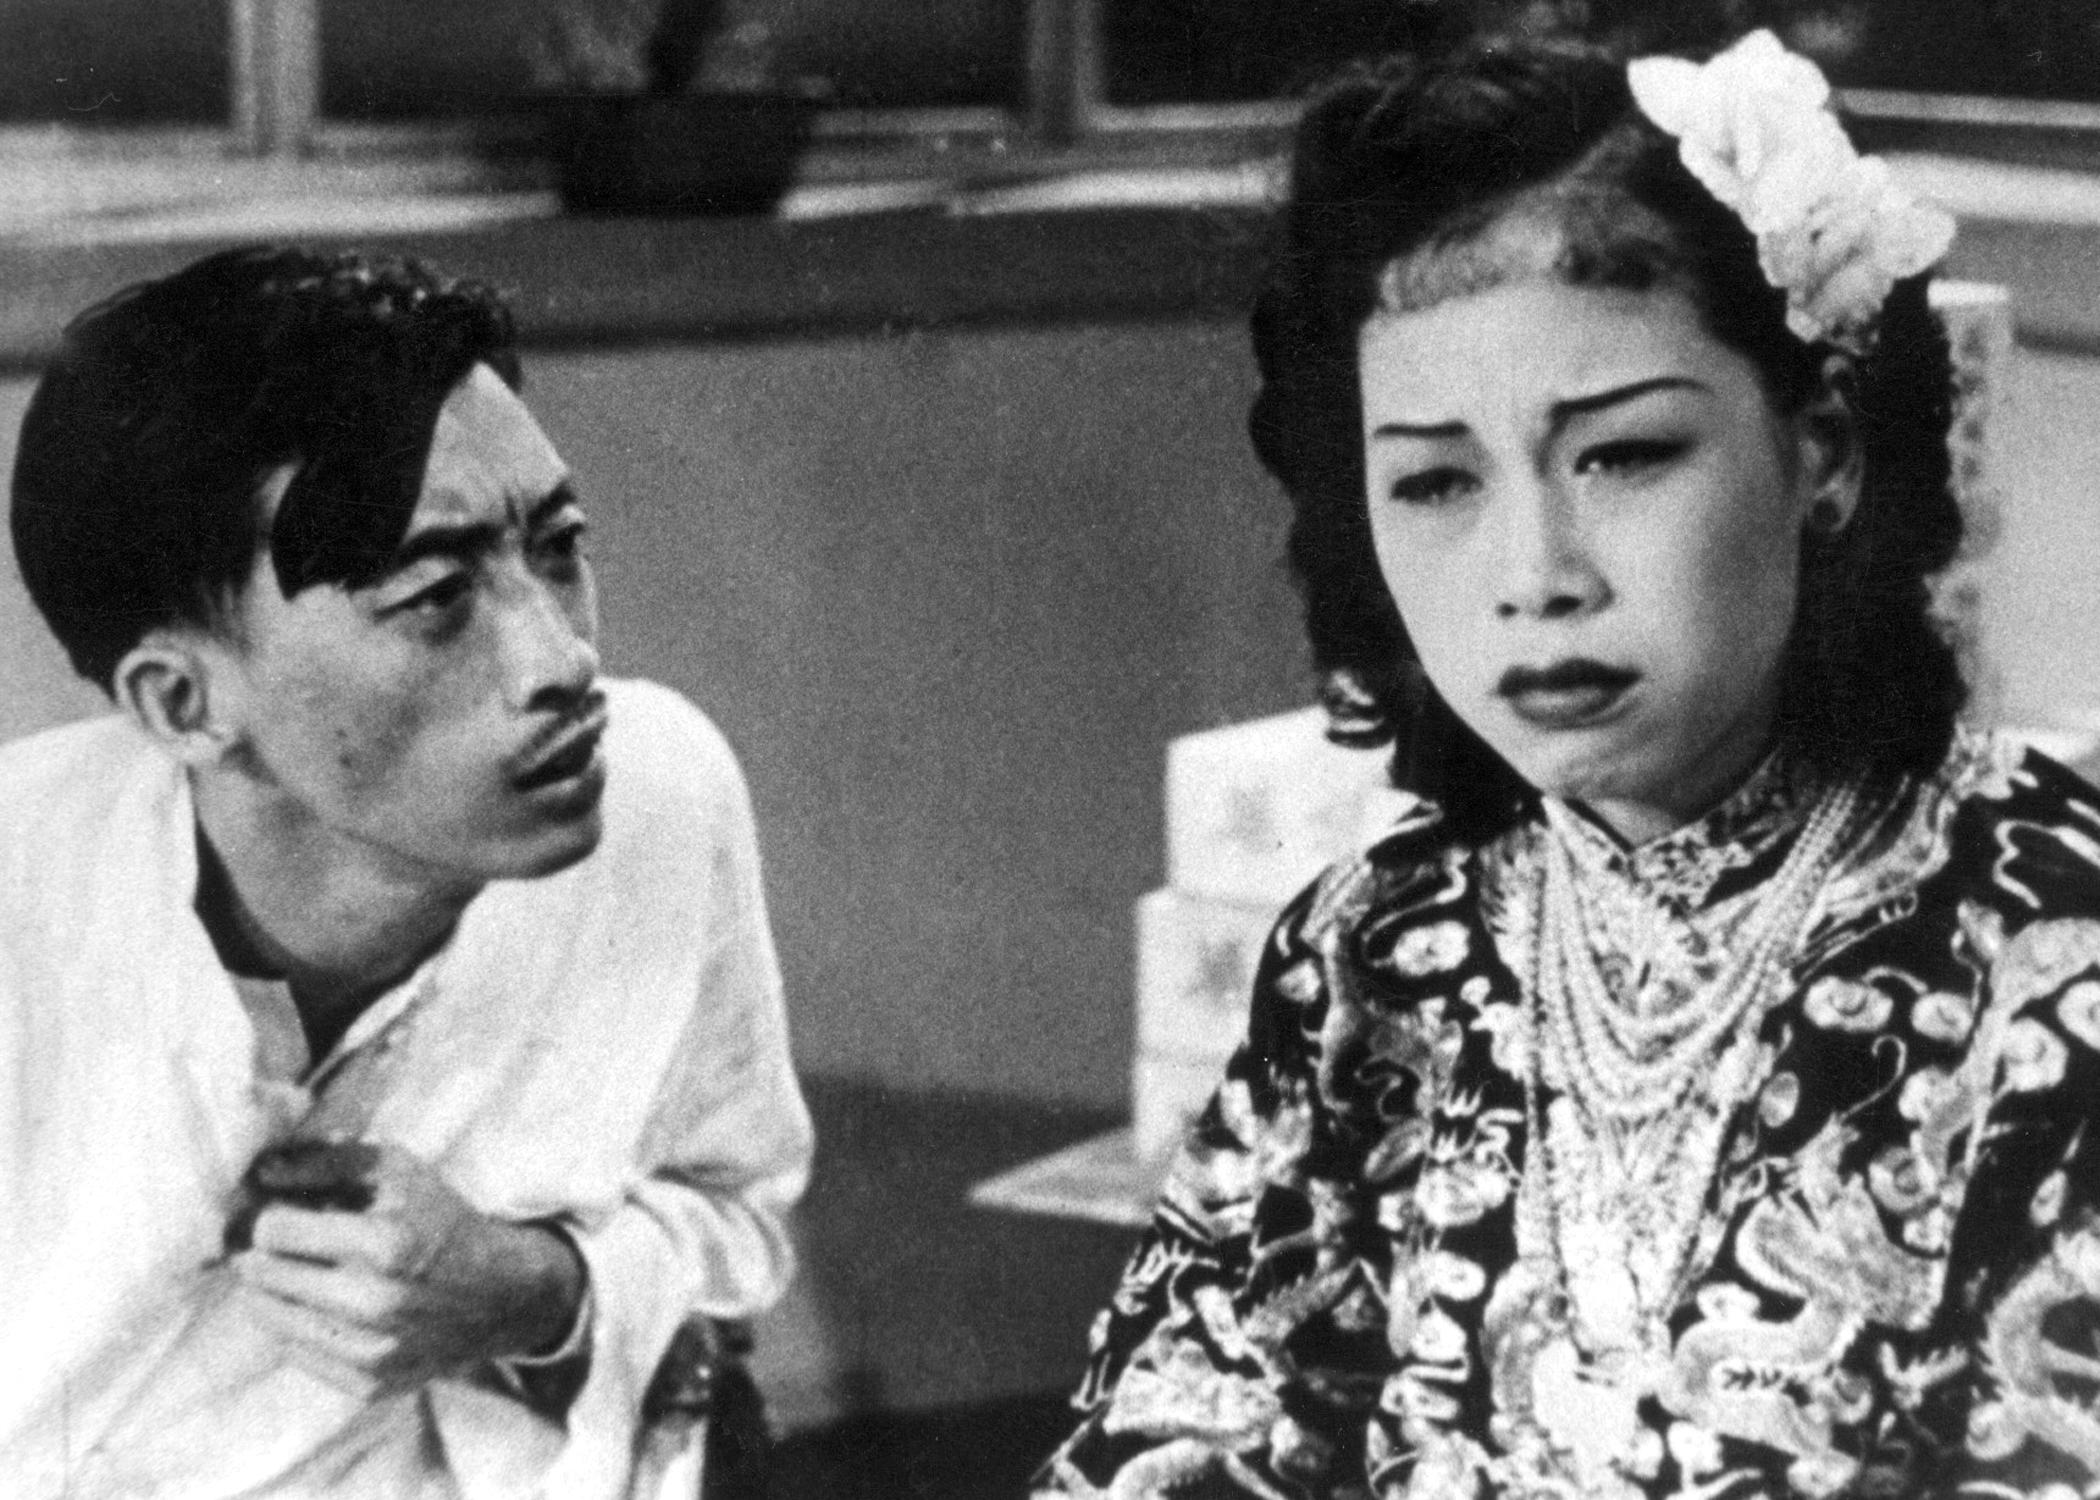 康樂及文化事務署香港電影資料館由七月至十二月，逢星期五上午十一時的「影畫早晨」節目，將精選放映18齣芳艷芬經典作品，讓戲迷重溫這位「花旦王」精湛演技。圖示《紅菱血（上集）》（1951）劇照。